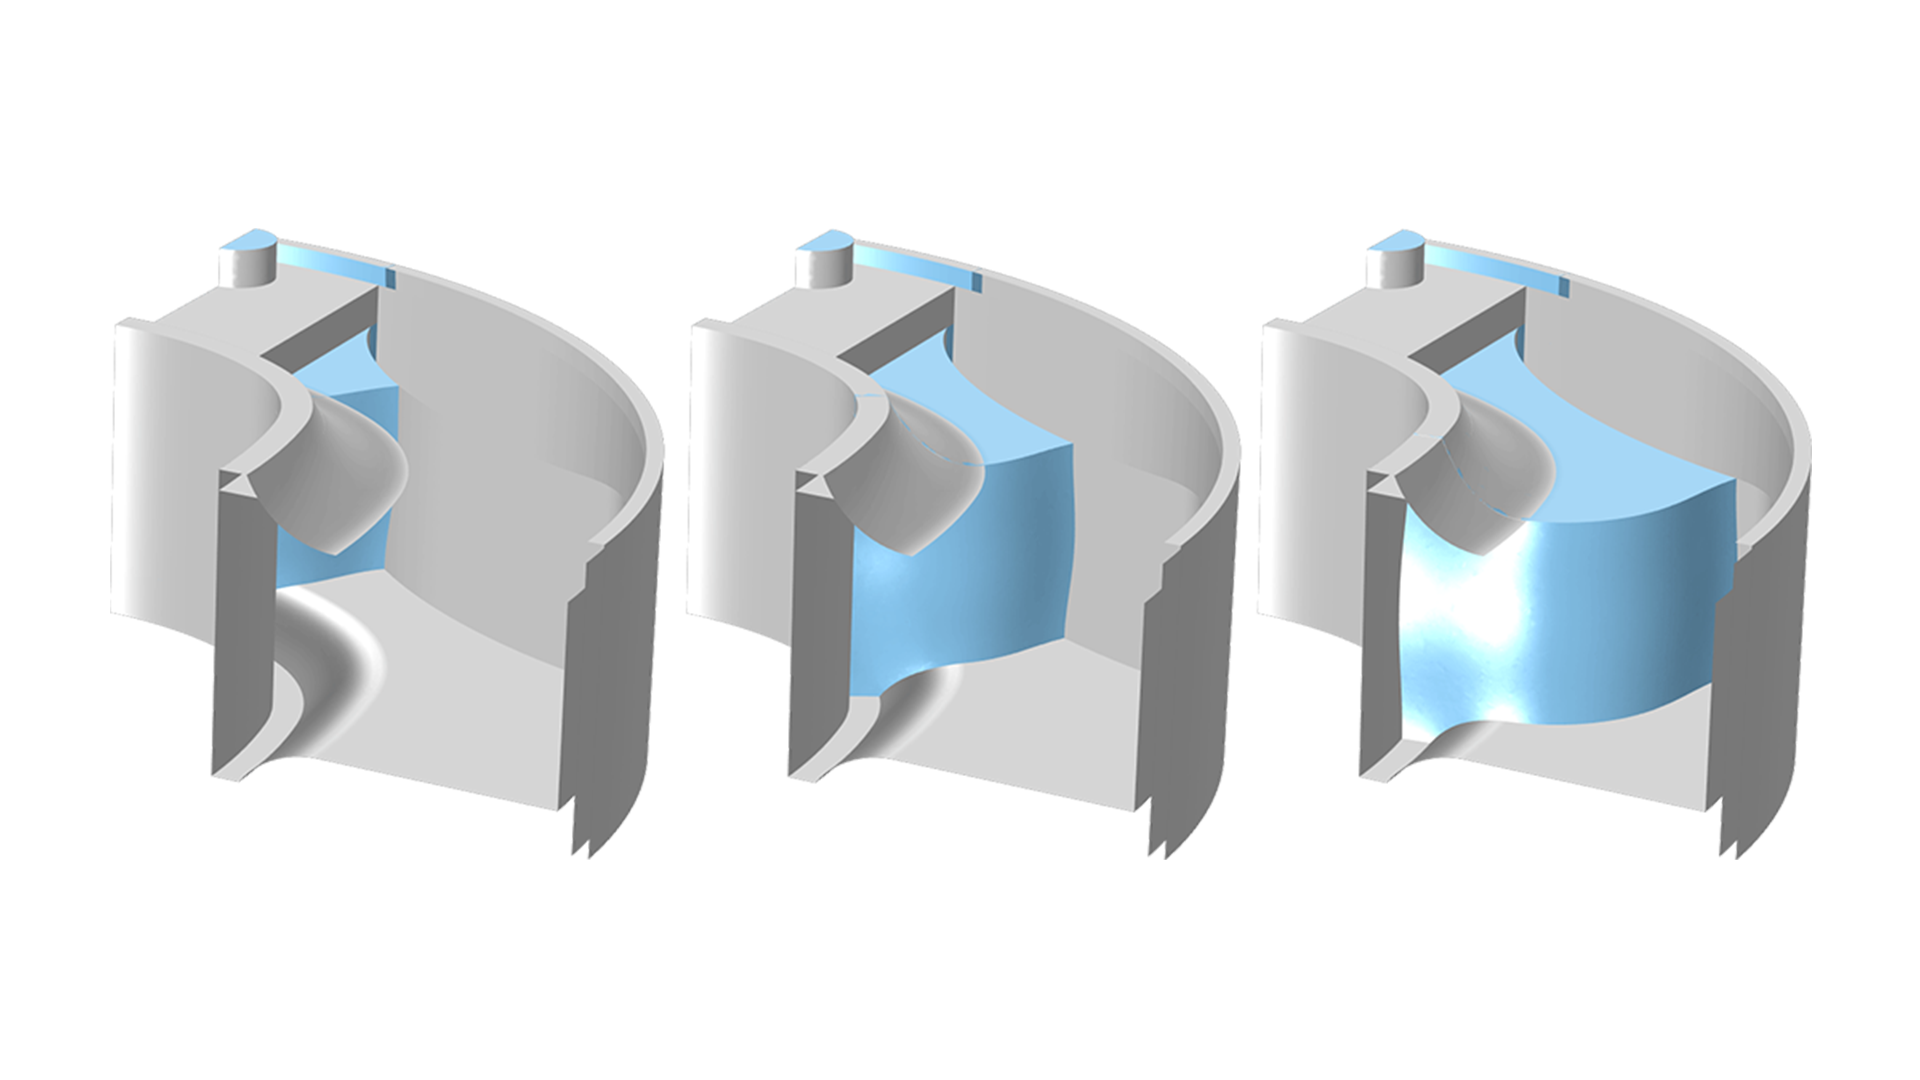 Ein dreimal abgebildetes Gießform-Modell mit zunehmender Menge an blauem Gummi im Inneren, von links nach rechts, vom geringsten zum größten Anteil.